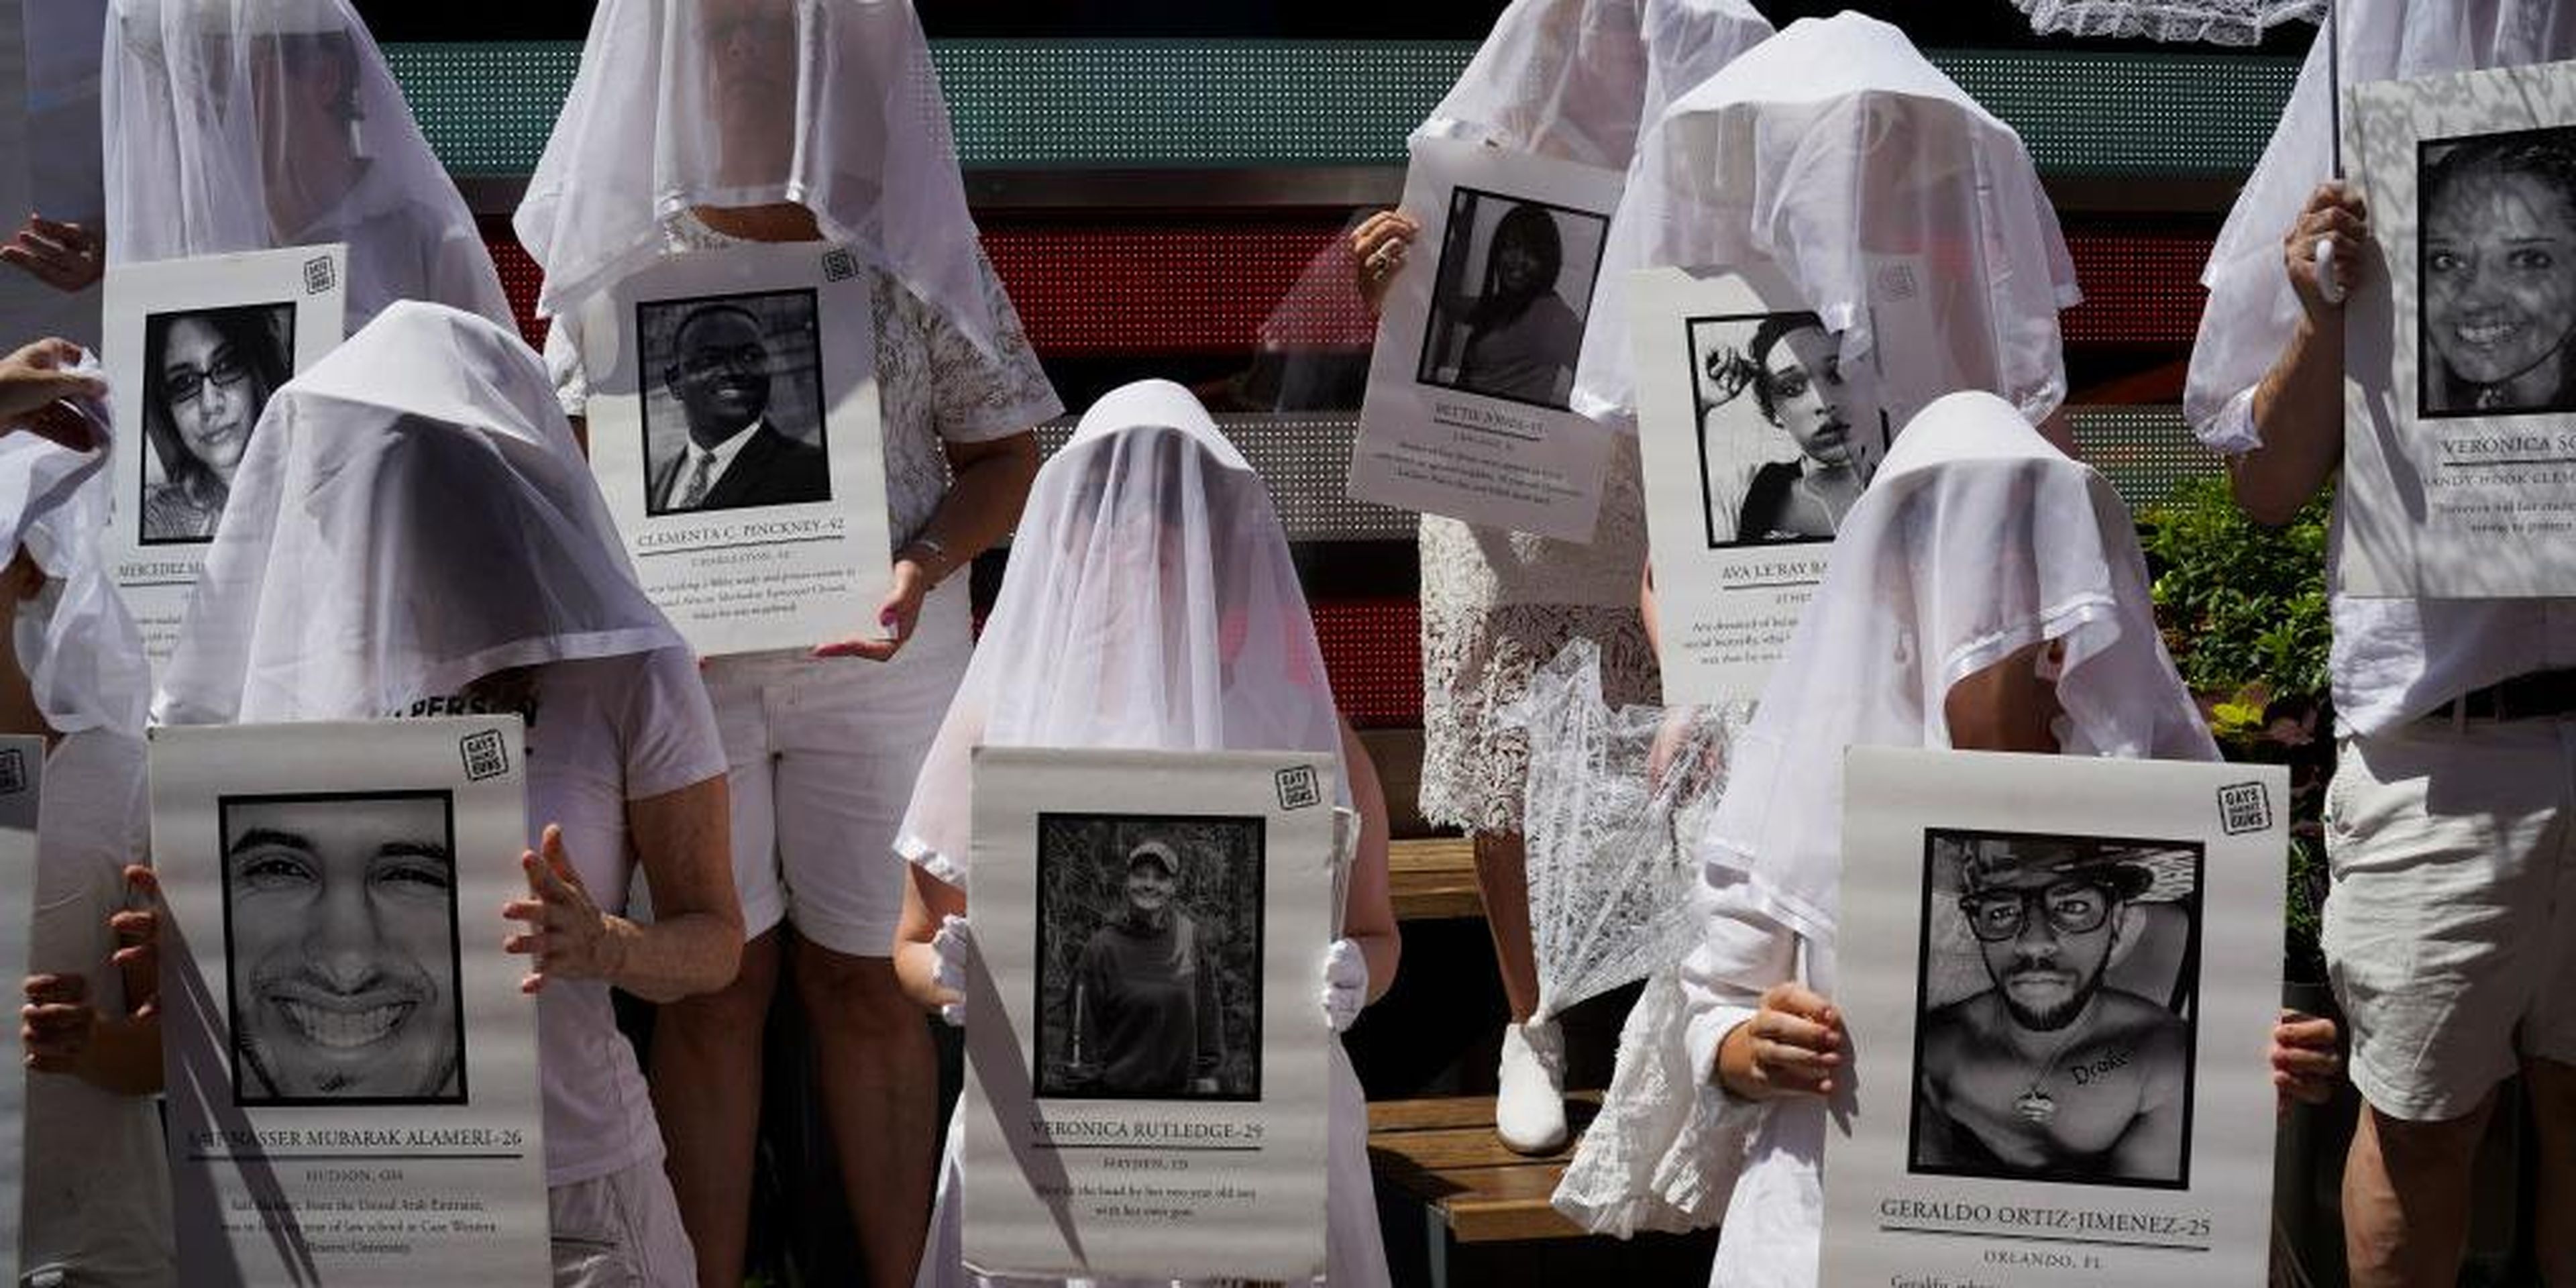 Manifestantes en contra de la violencia armada vestidos de blanco muestran fotos de las víctimas de la violencia armada en Times Square en respuesta a los recientes tiroteos masivos en El Paso, Texas y Denton, Ohio